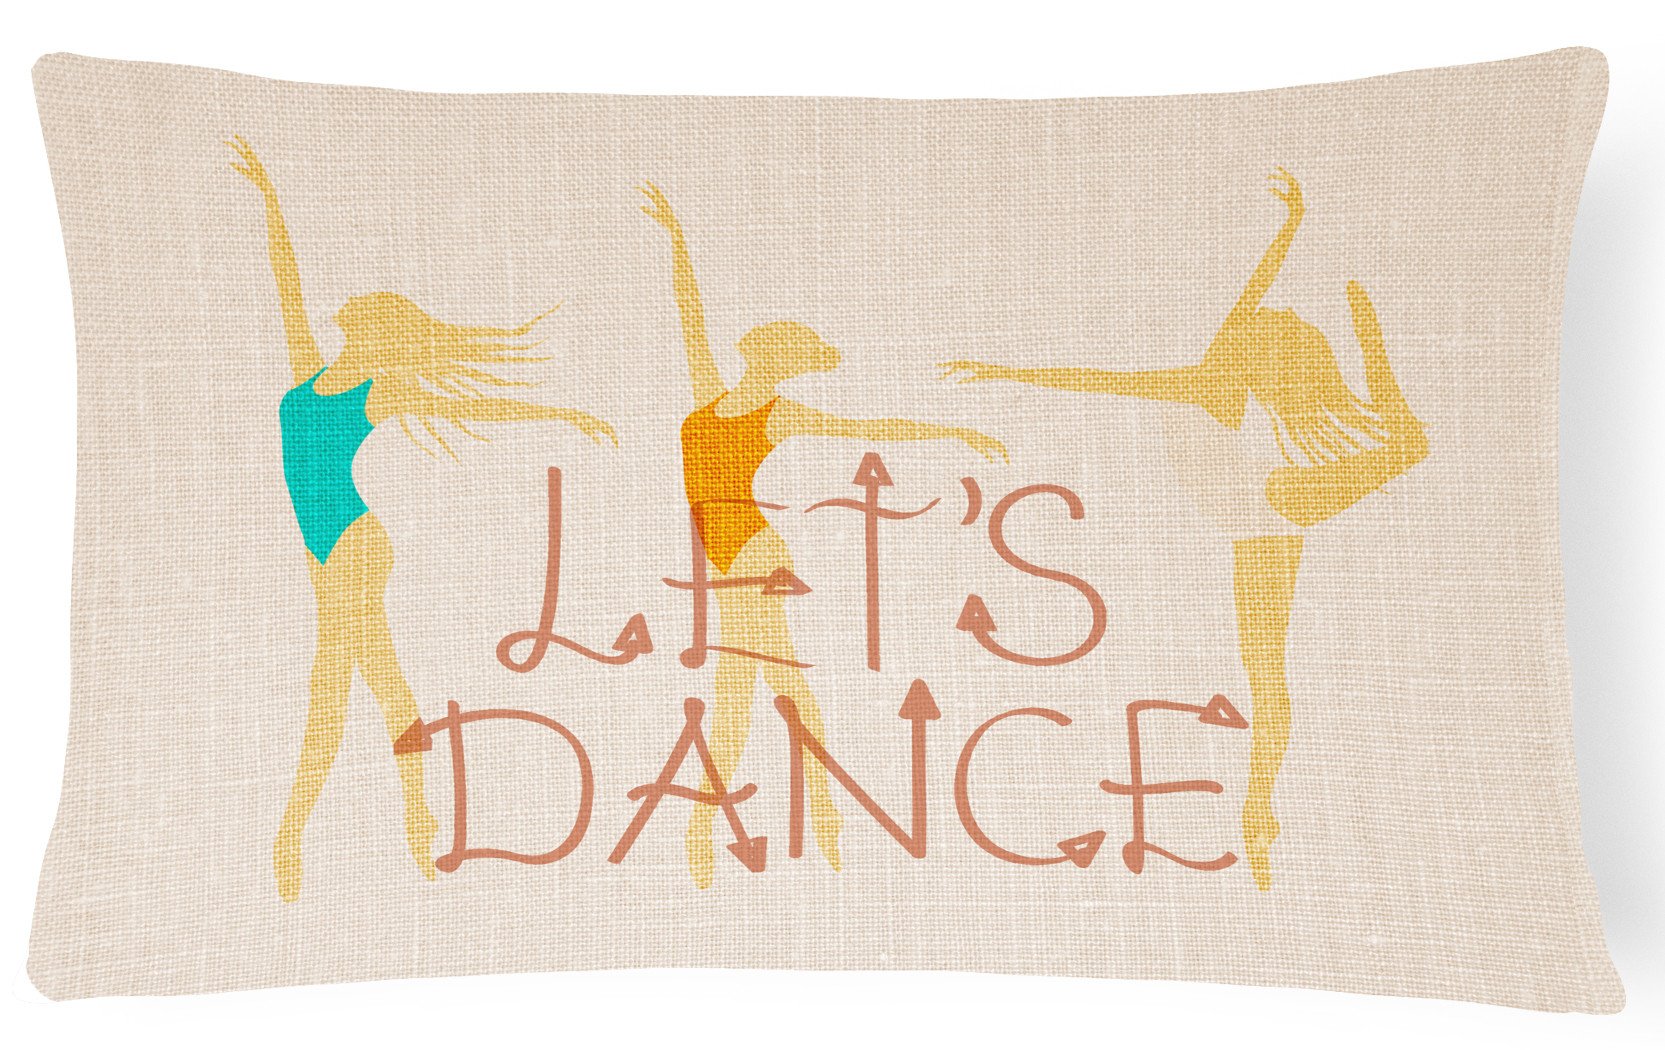 Let's Dance Linen Light Canvas Fabric Decorative Pillow BB5376PW1216 by Caroline's Treasures